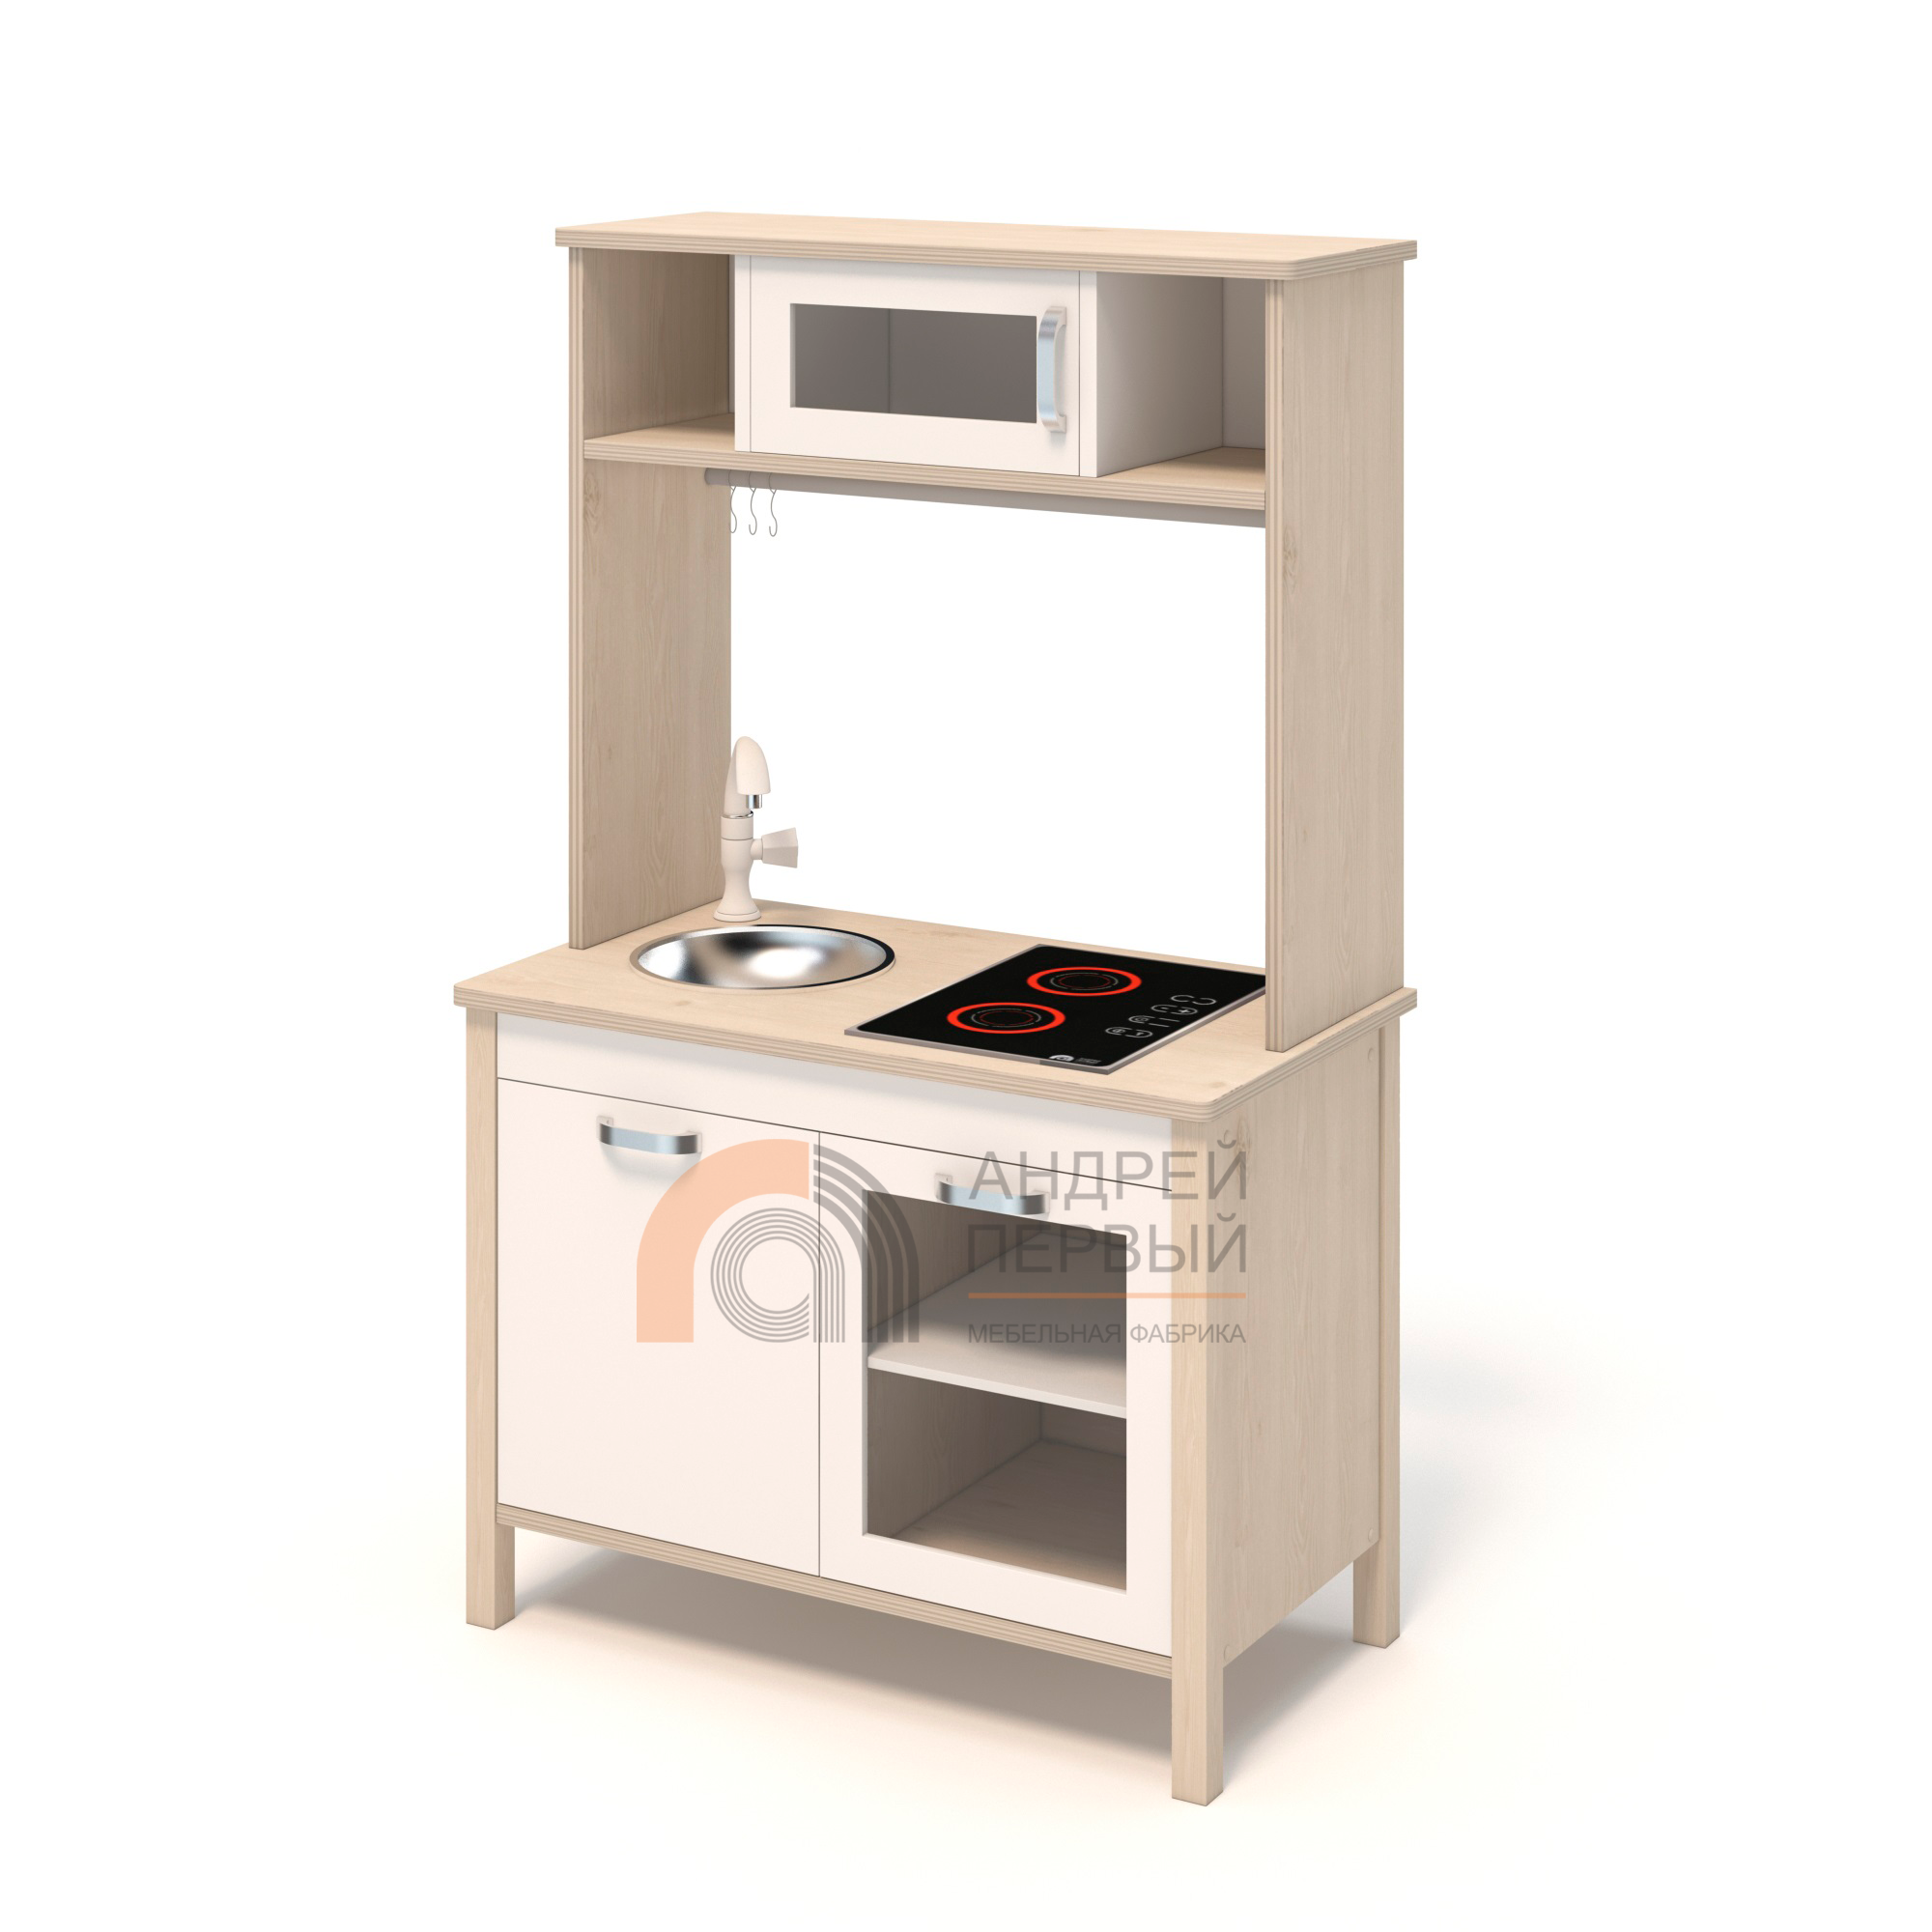 Игровой модуль «Кухня» с плитой